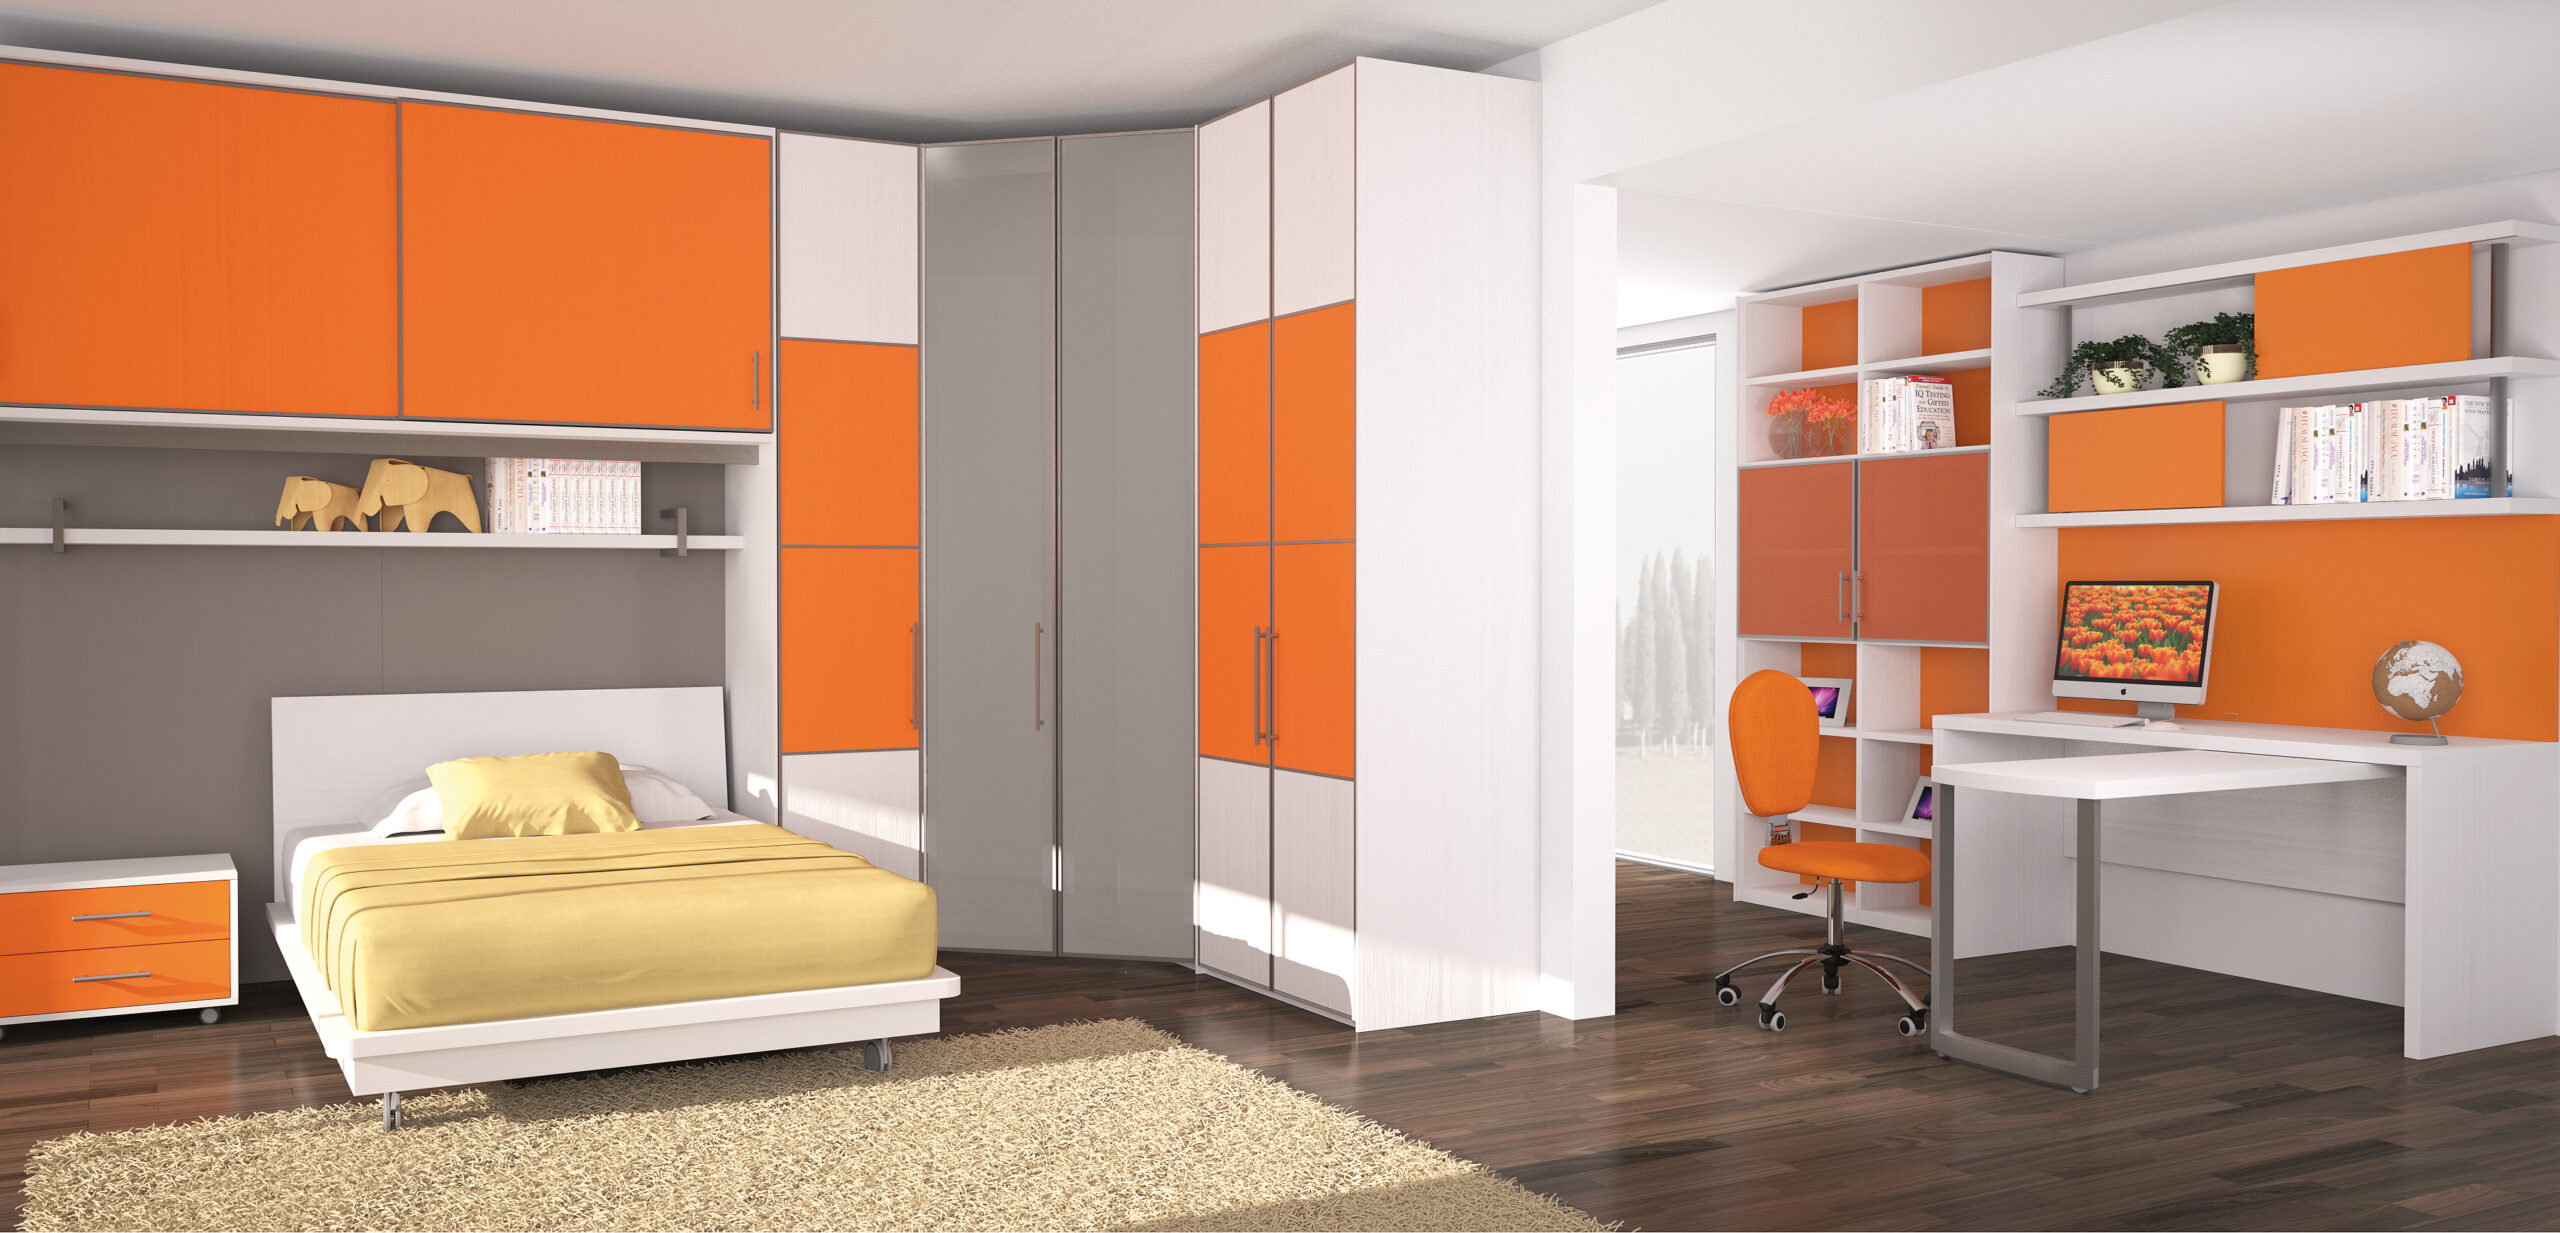 gambar interior rumah warna orange